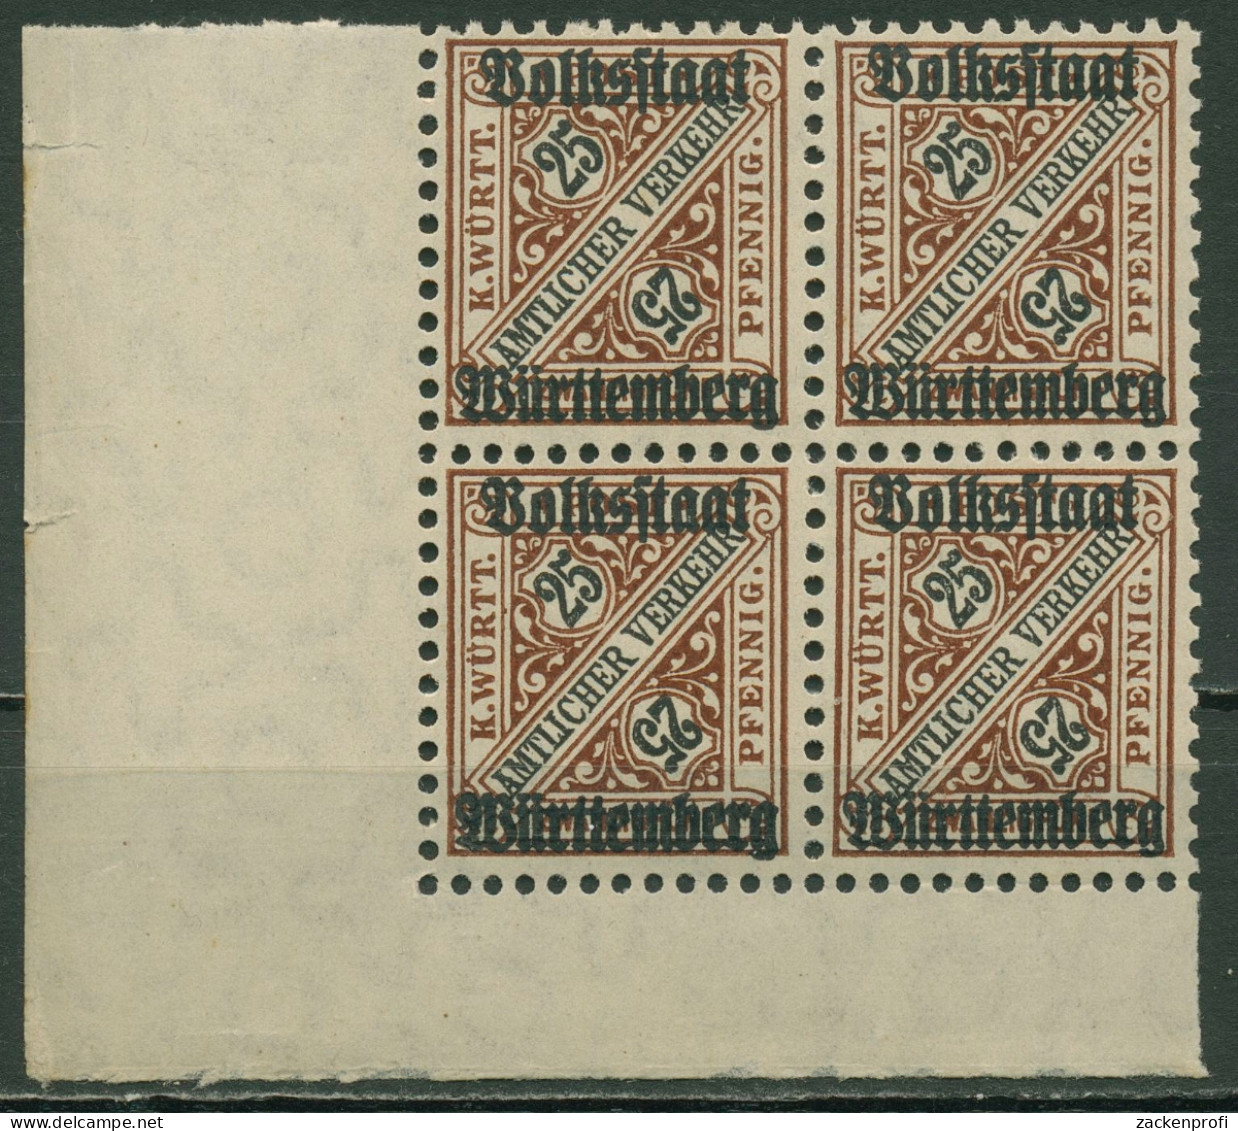 Württemberg Dienstmarken 1919 Mit Aufdruck 265 4er-Block, Ecke 3 Postfrisch - Ungebraucht